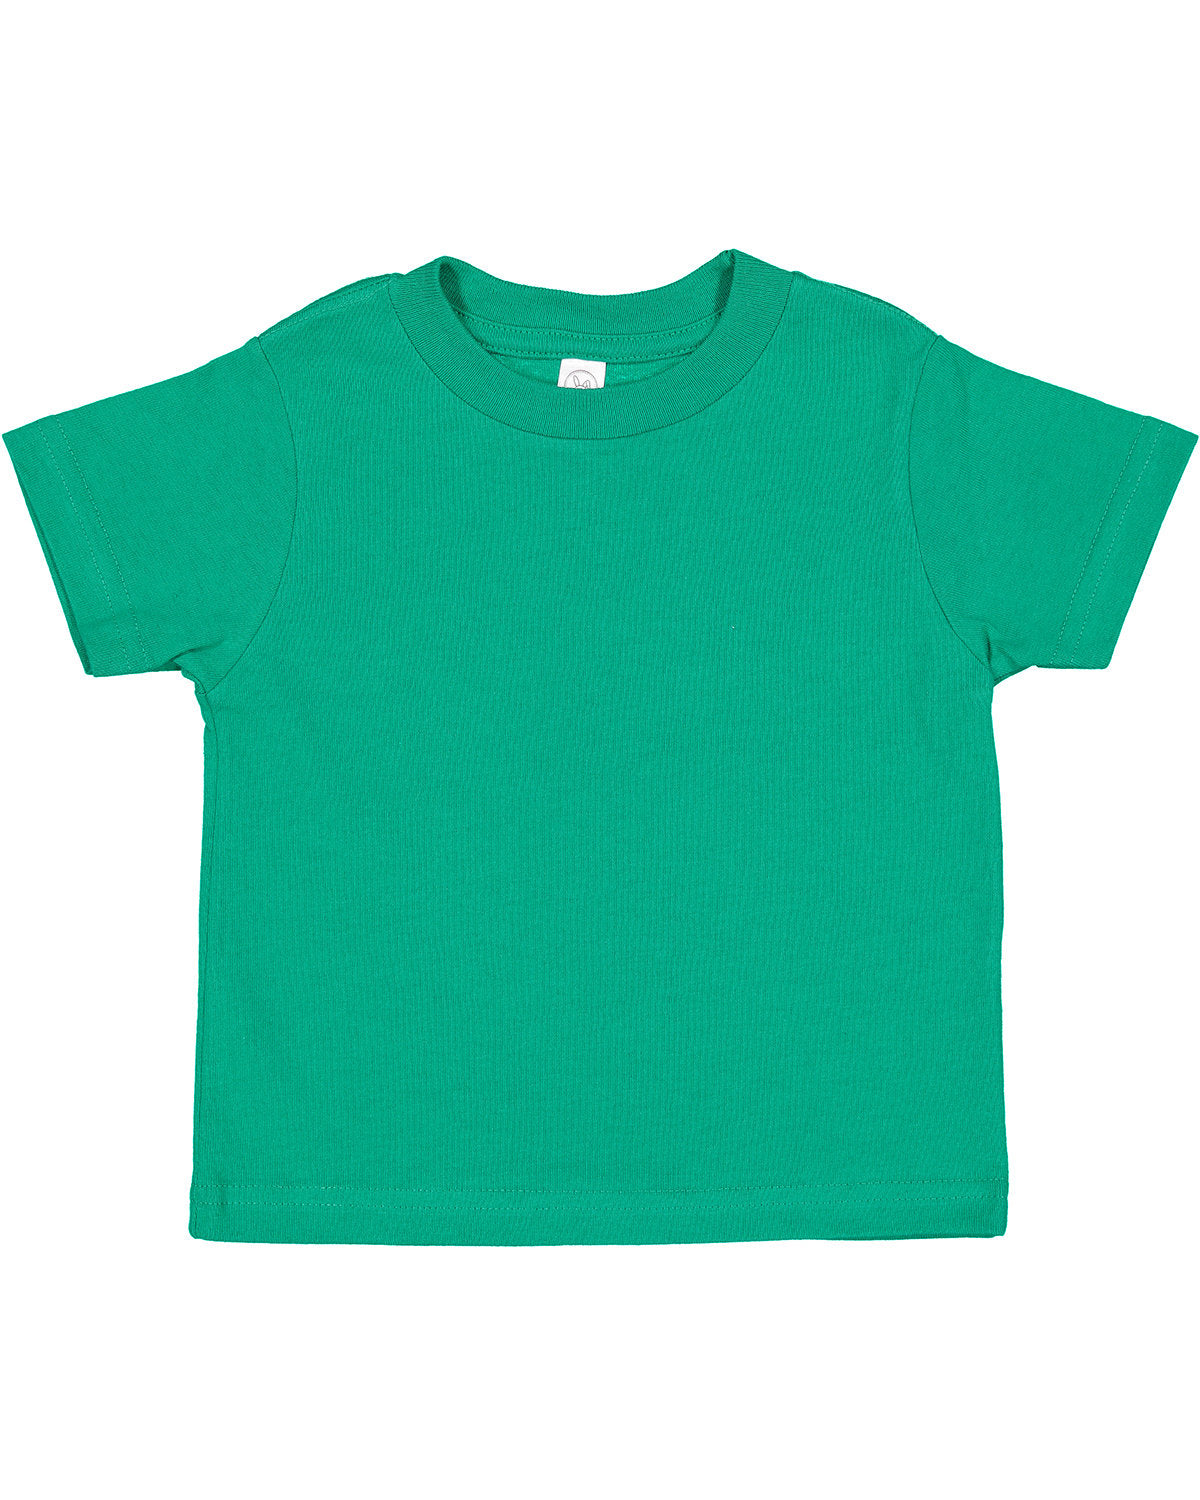 Rabbit Skins Toddler Cotton Jersey T-Shirt 2T / Kelly